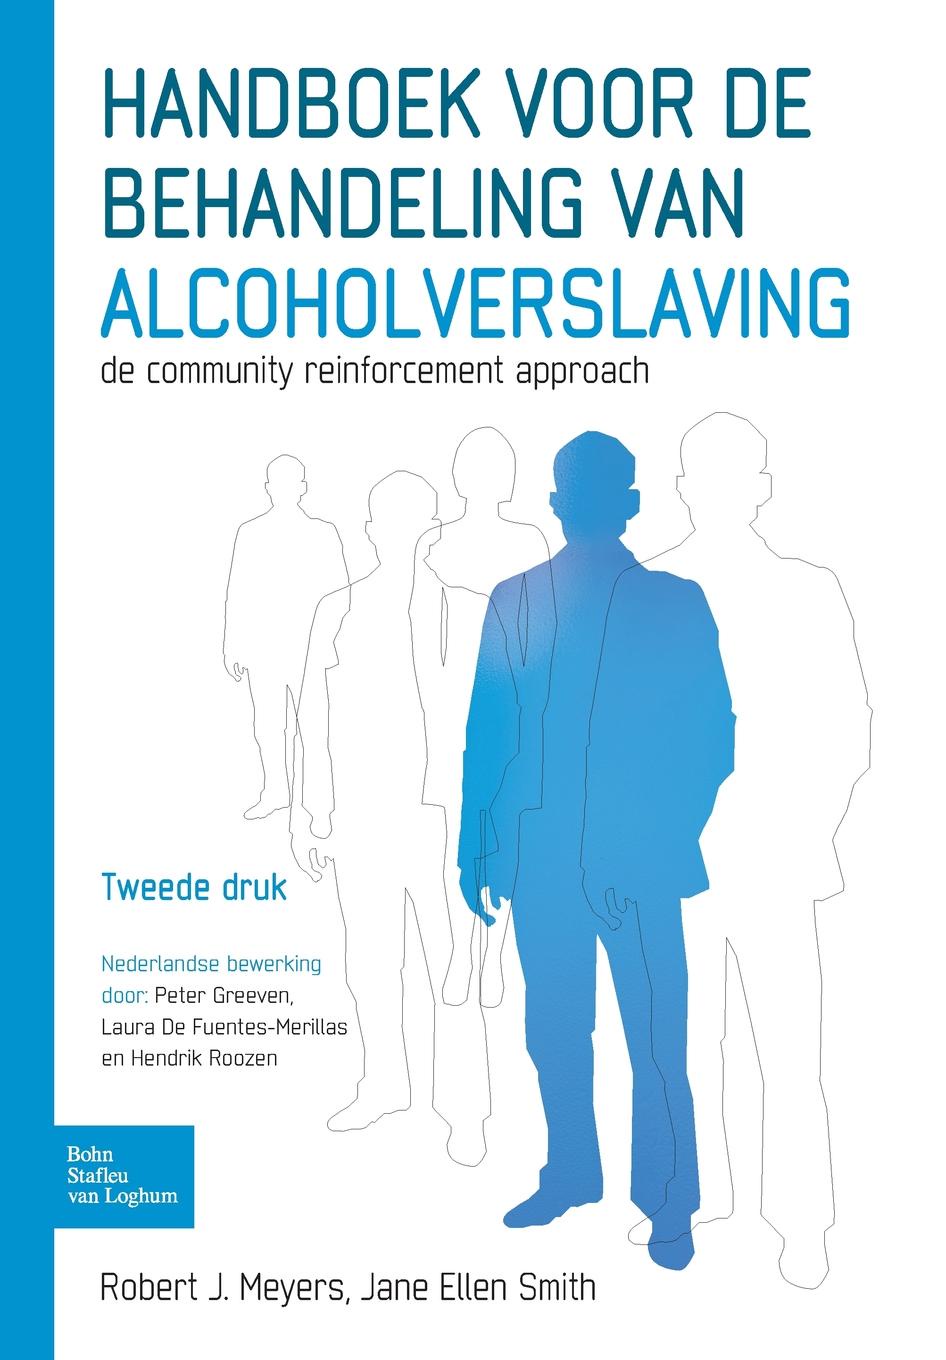 Handboek voor de behandeling van alcoholverslaving. De community reinforcement approach